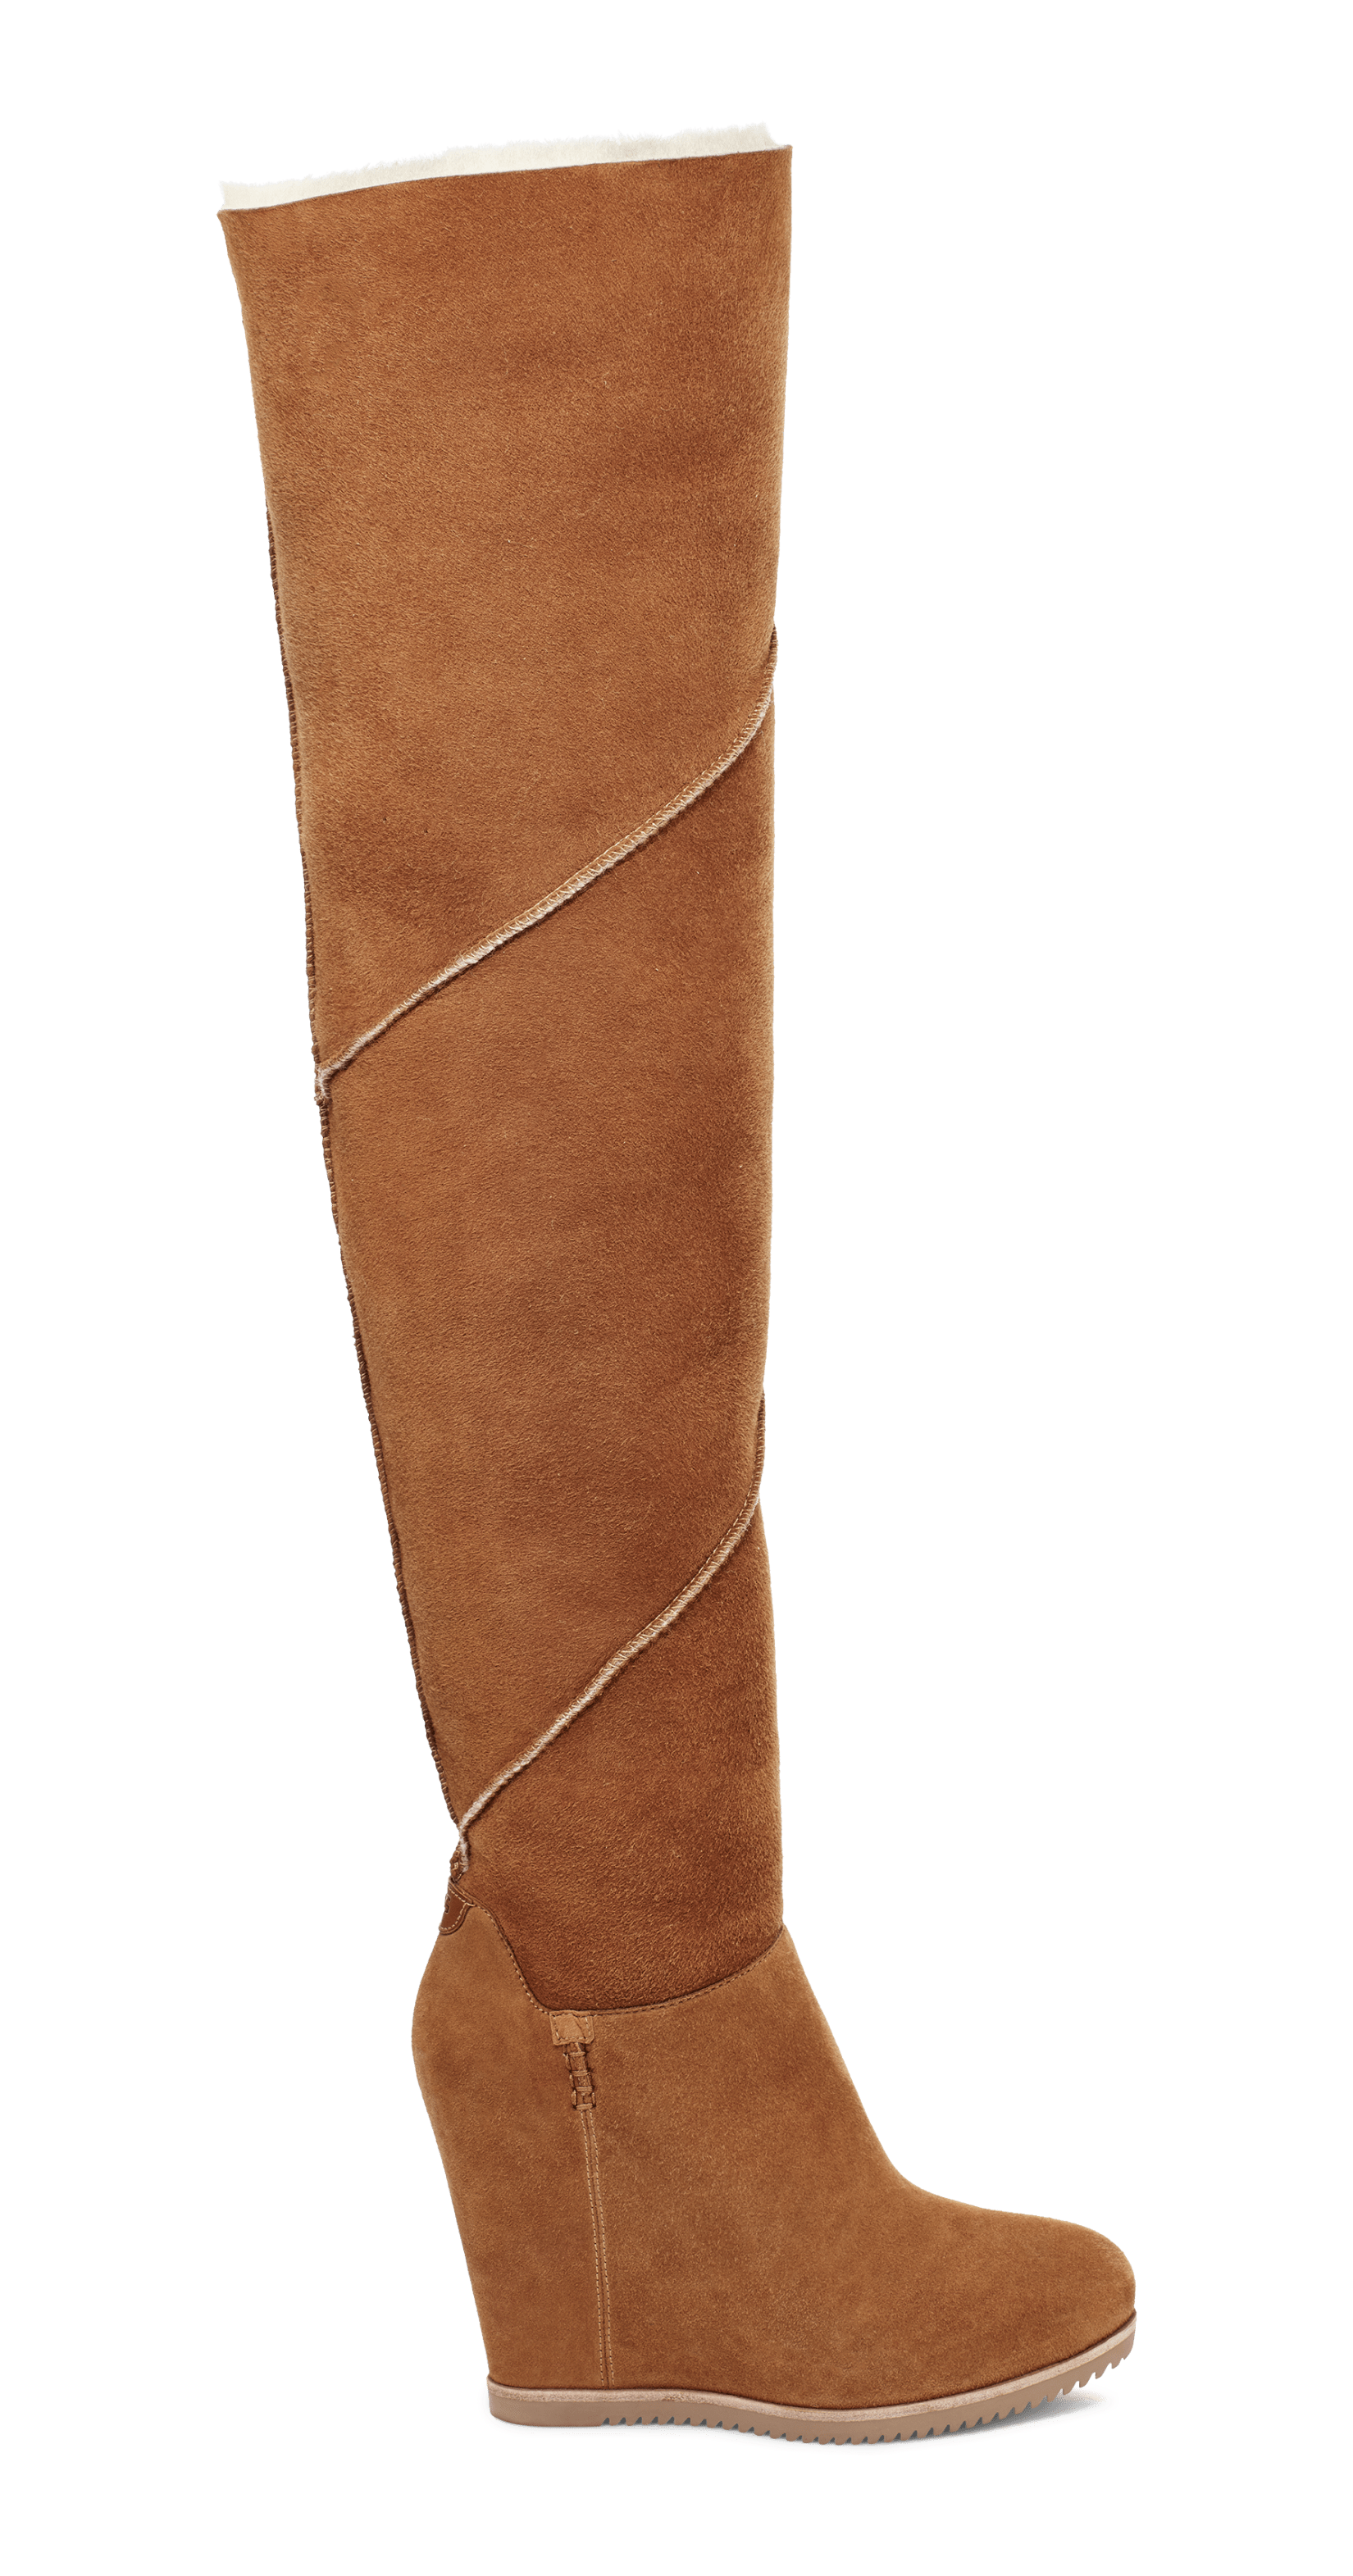 UGG classic femme otk ロングブーツ - ブーツ